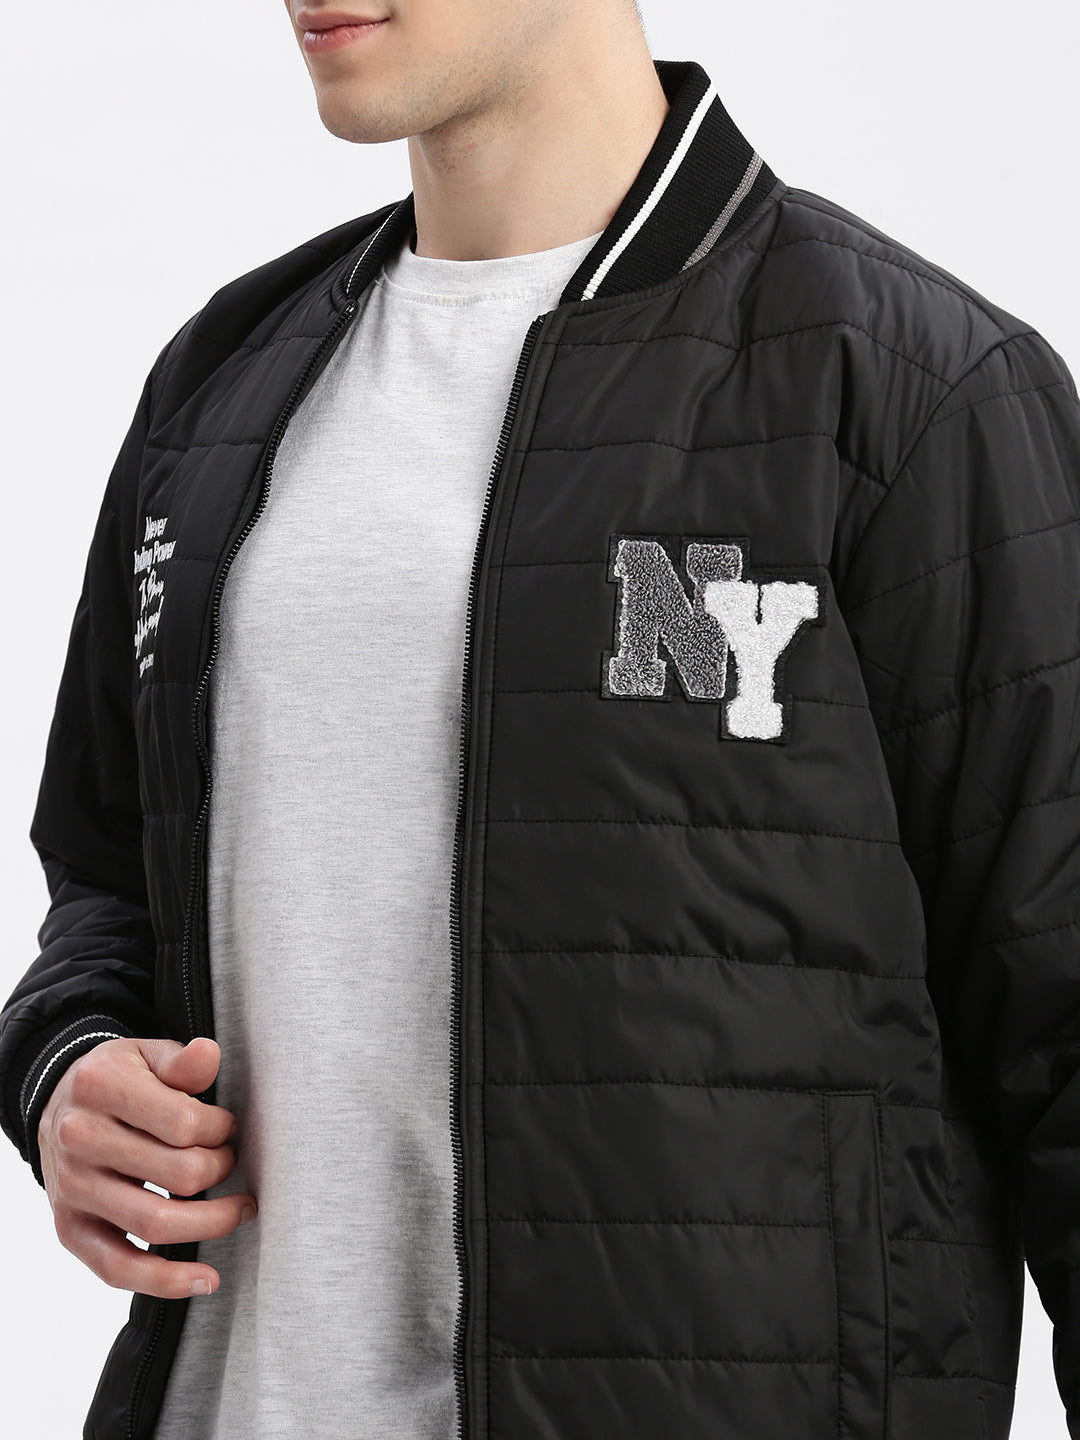 Men Typography Mandarin Collar Black Puffer Jacket